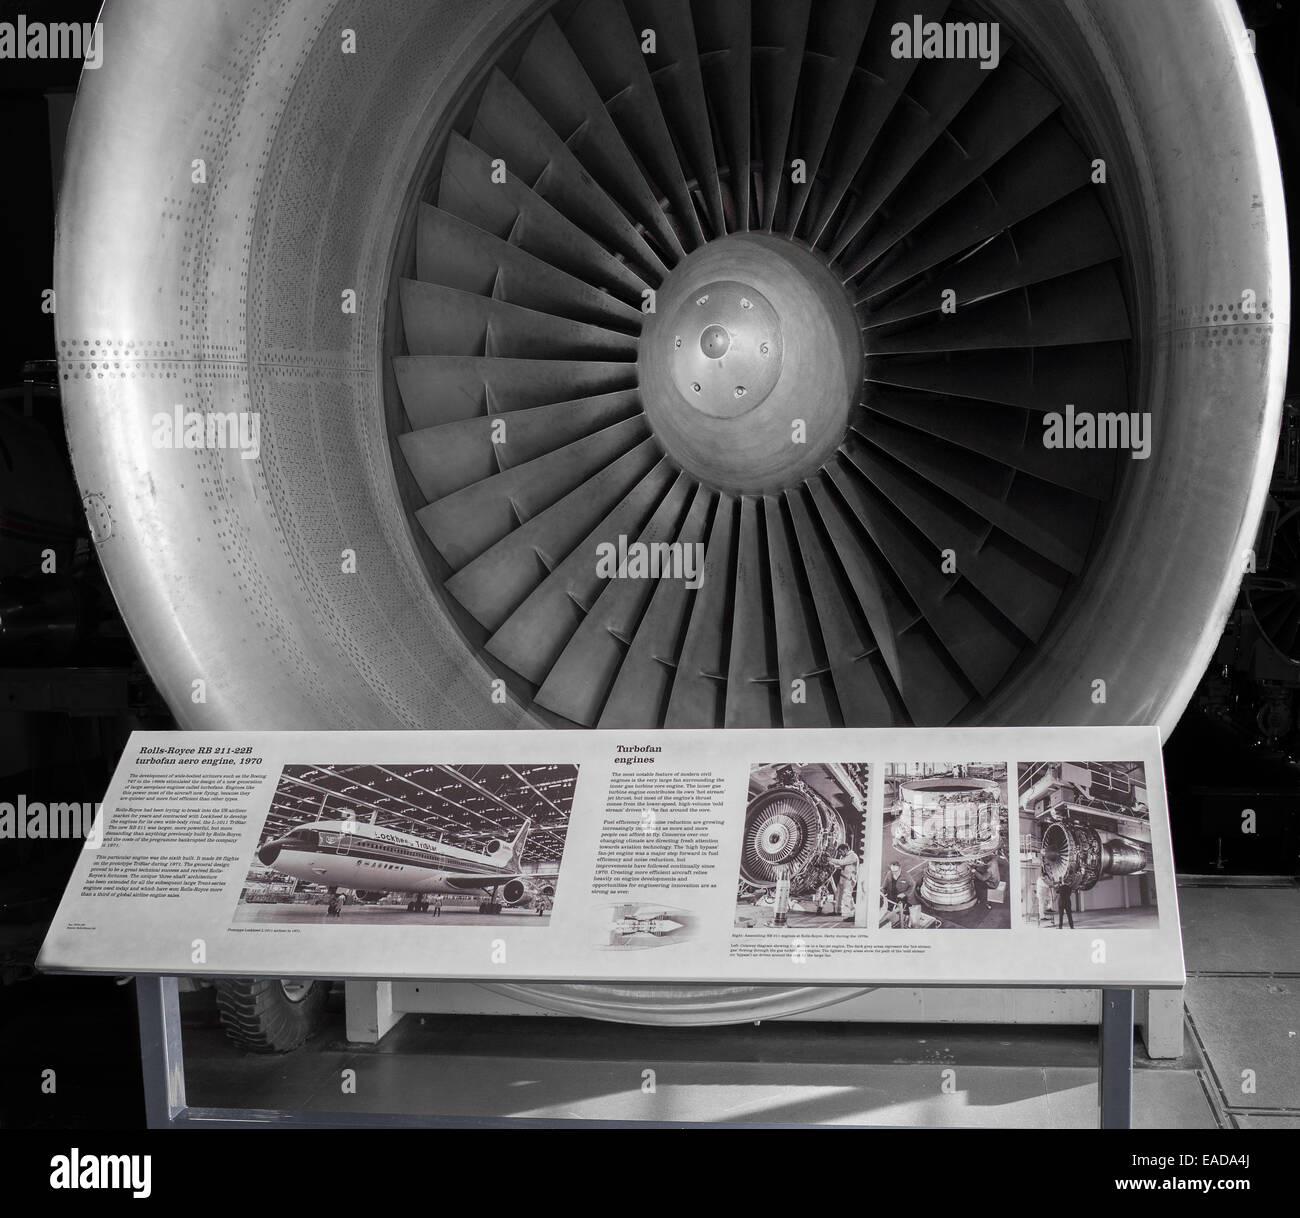 Rolls Royce motore, la RB 211-22B turbofan aero engine (1970), in mostra presso il Museo delle Scienze di Londra. Foto Stock